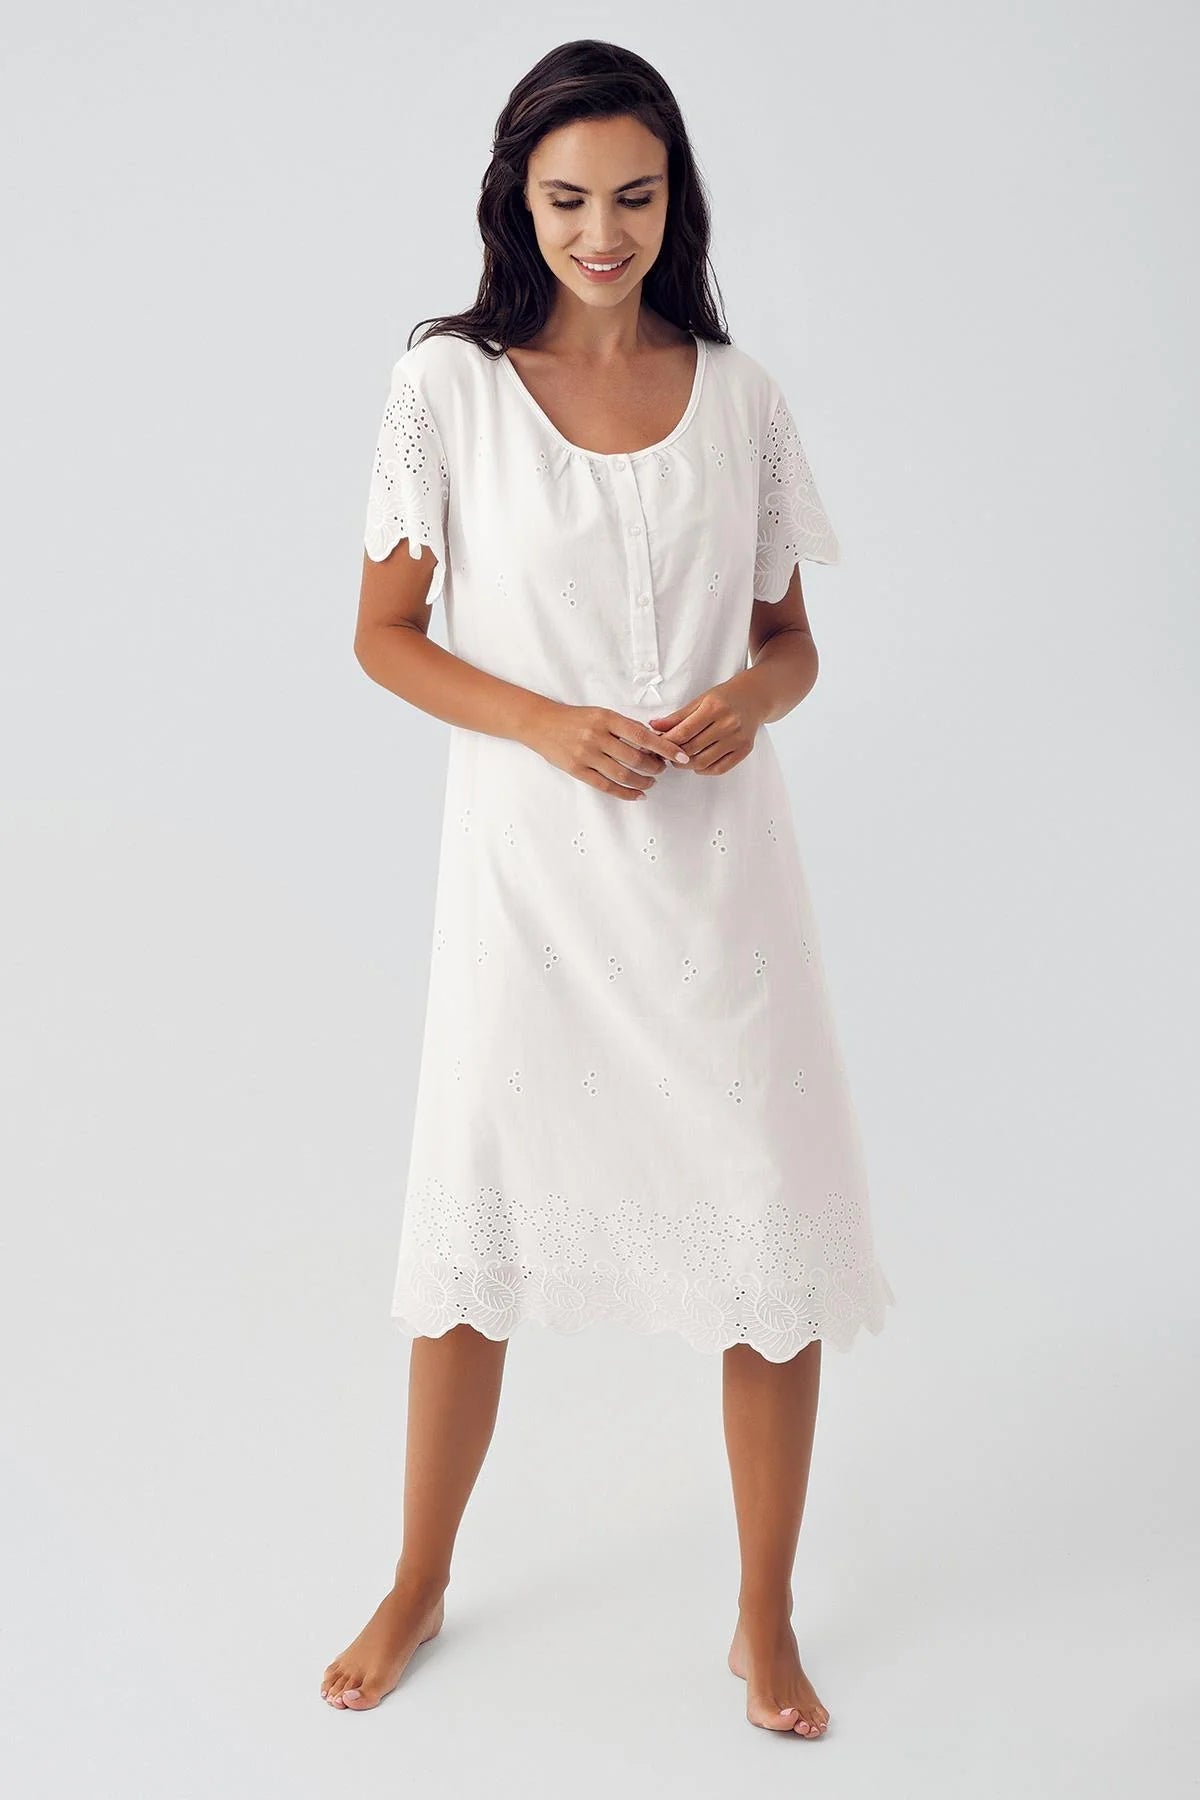 Shopymommy 10117 Woven Maternity & Nursing Nightgown Ecru